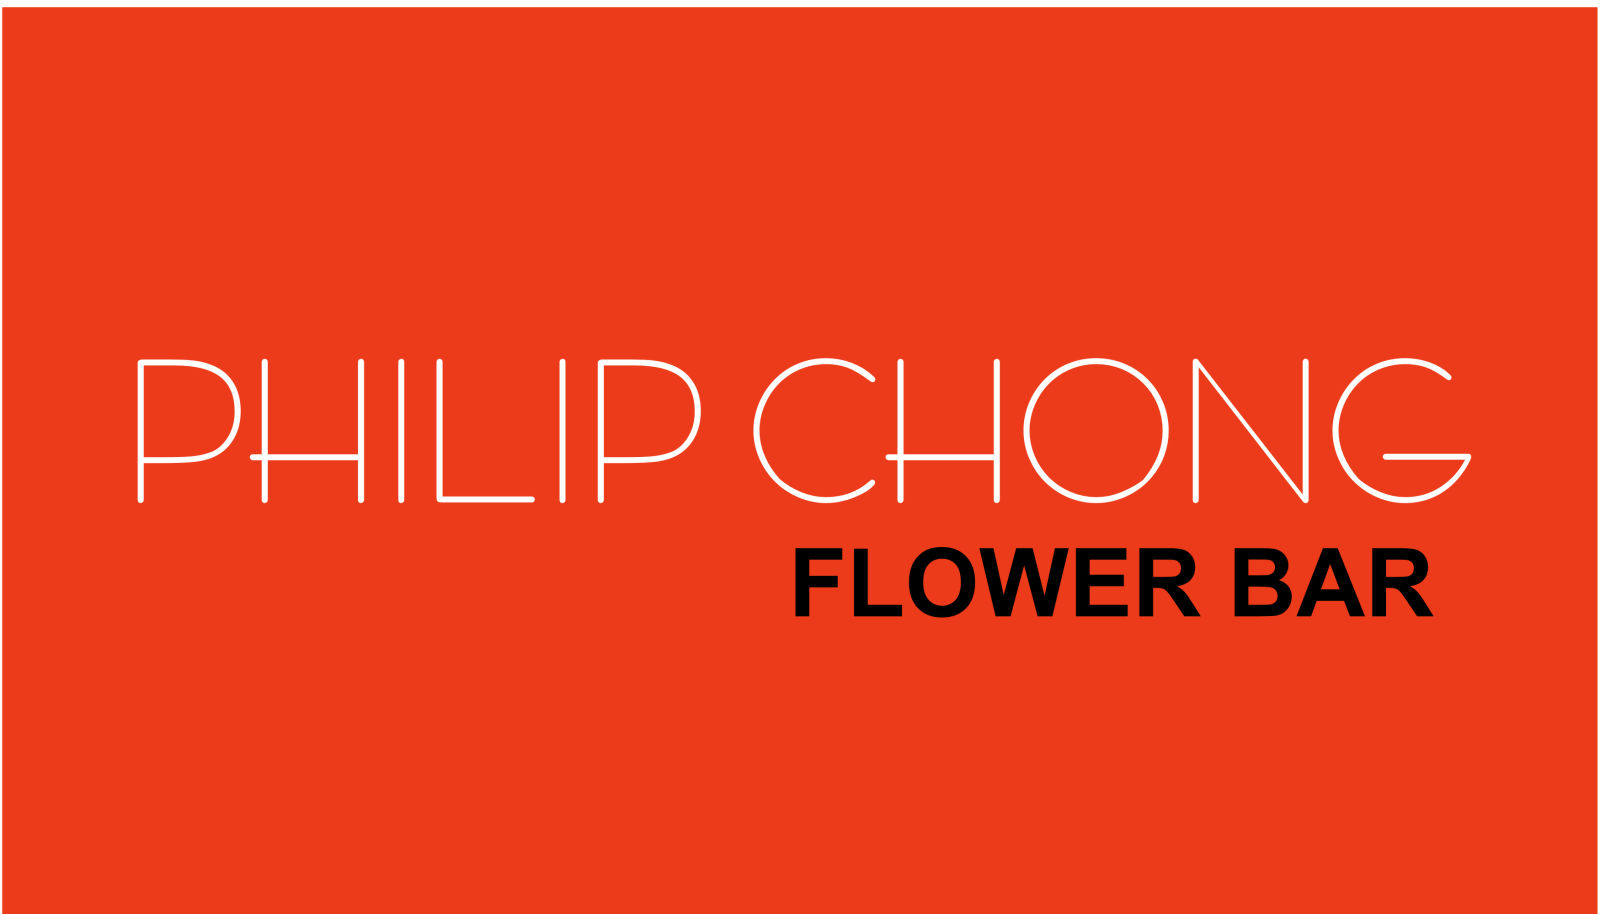 Phillip Chong Flower Bar